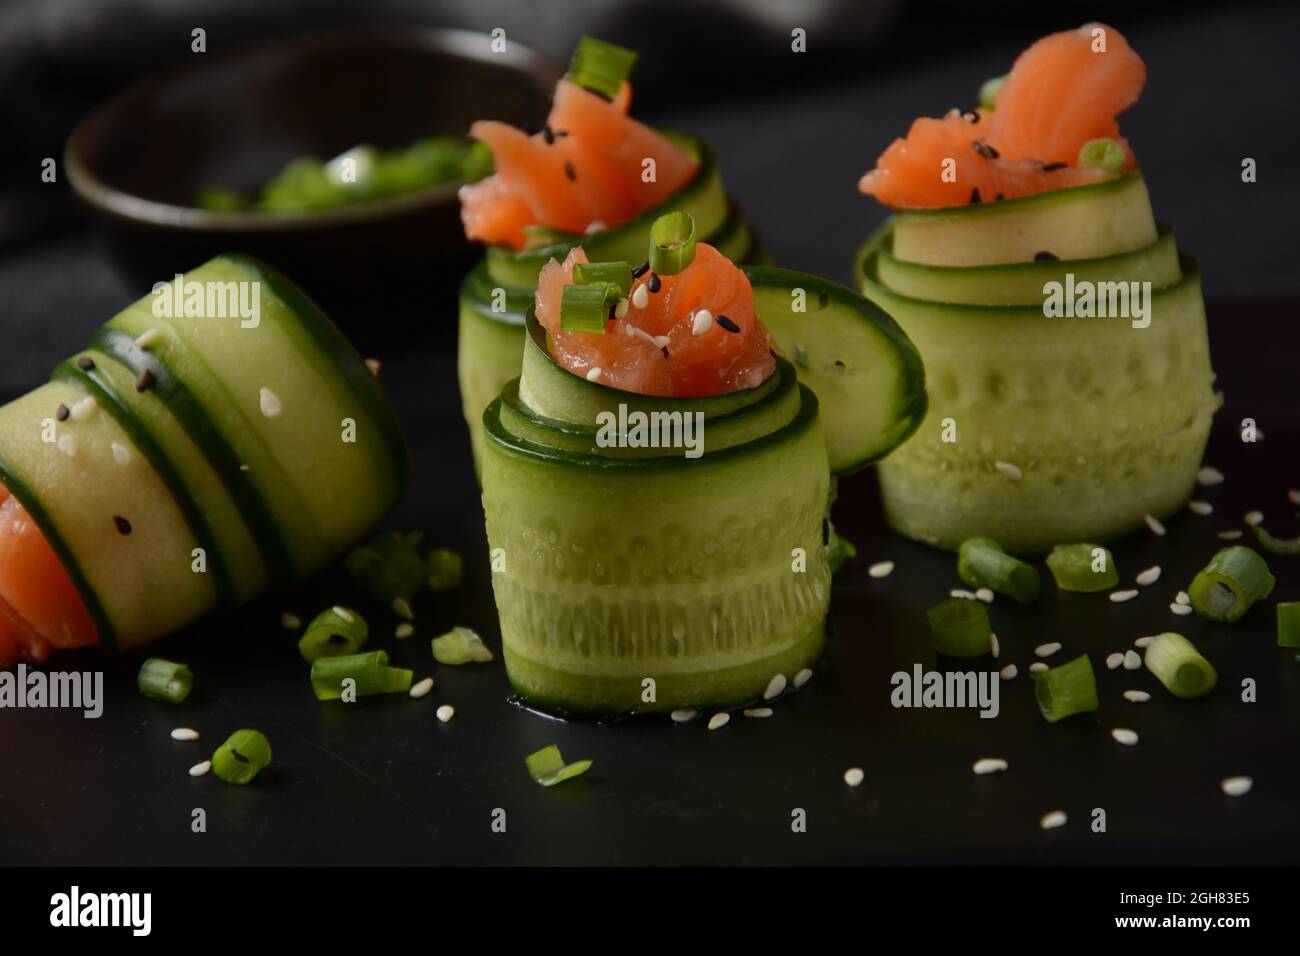 Rotoli di cetrioli con pezzi di salmone salato, semi di sesamo bianco e nero, cipolla verde tritata. Antipasti di verdure di festa Foto Stock